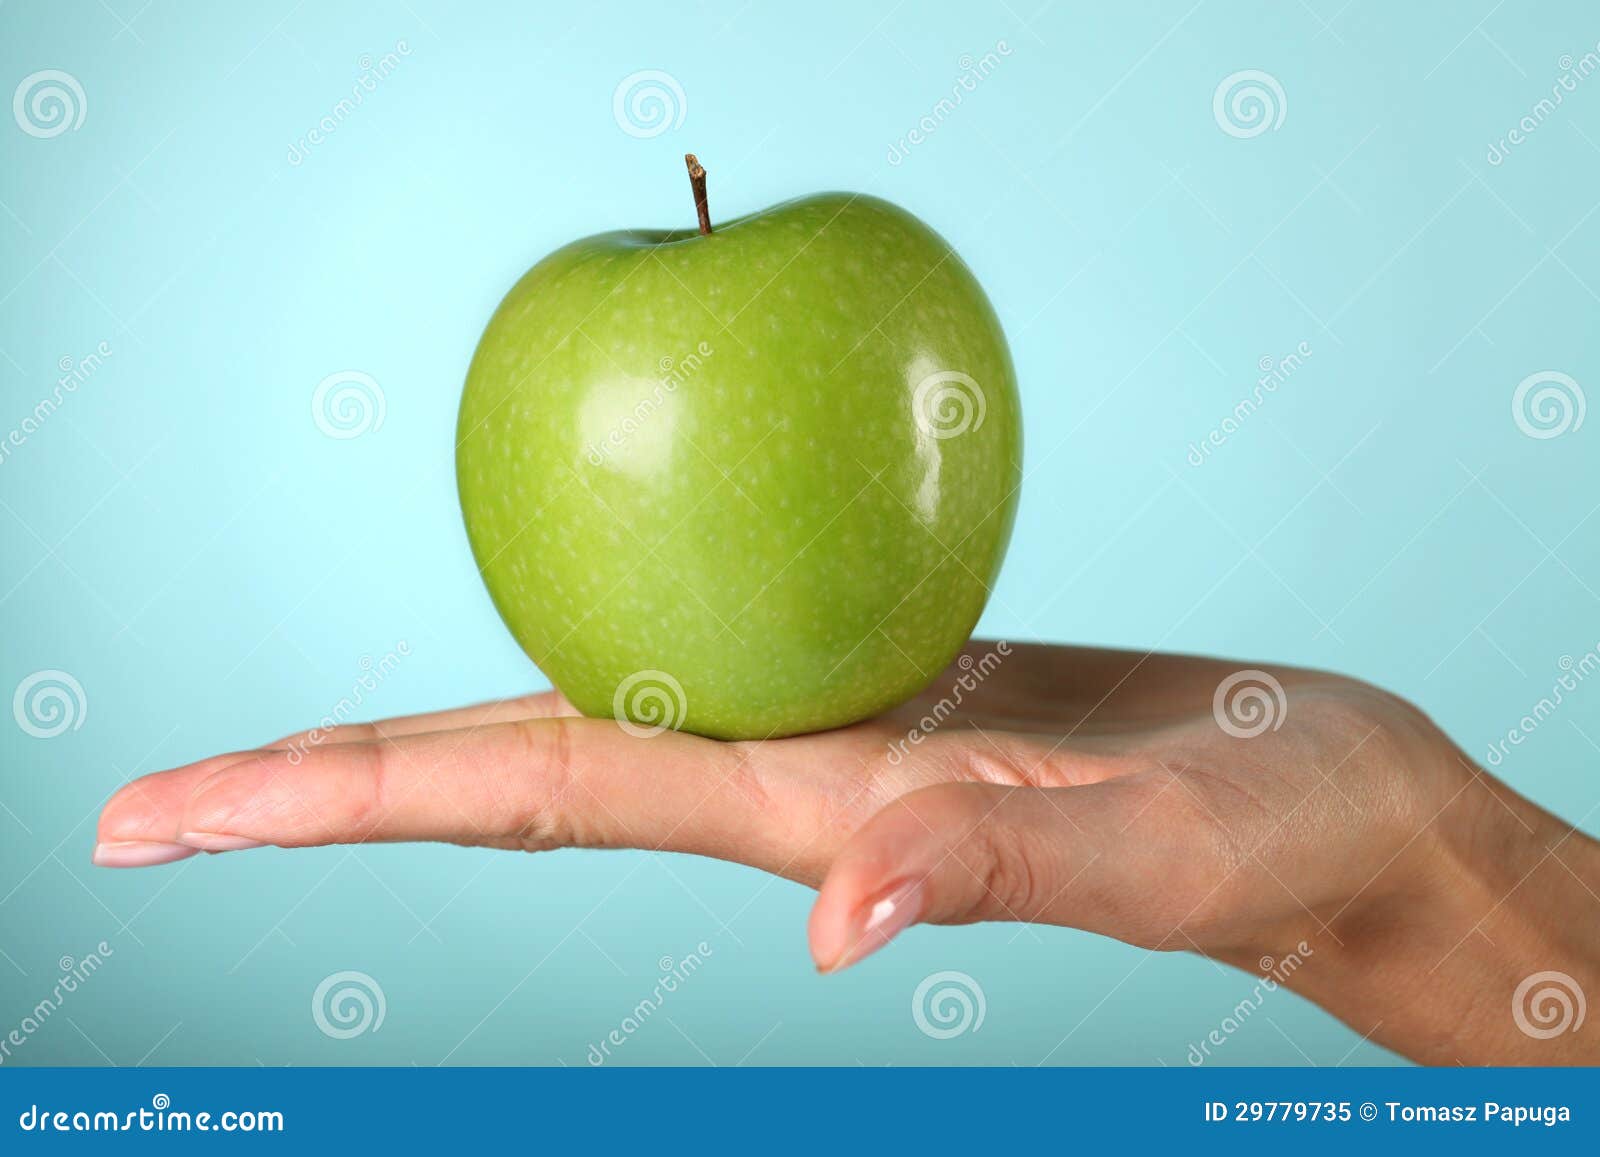 Я хочу зеленое яблоко прямо. Зеленое яблоко в руке. Яблоко над рукой. Зеленое яблочко в руках. Рука кидающее зеленое яблоко.